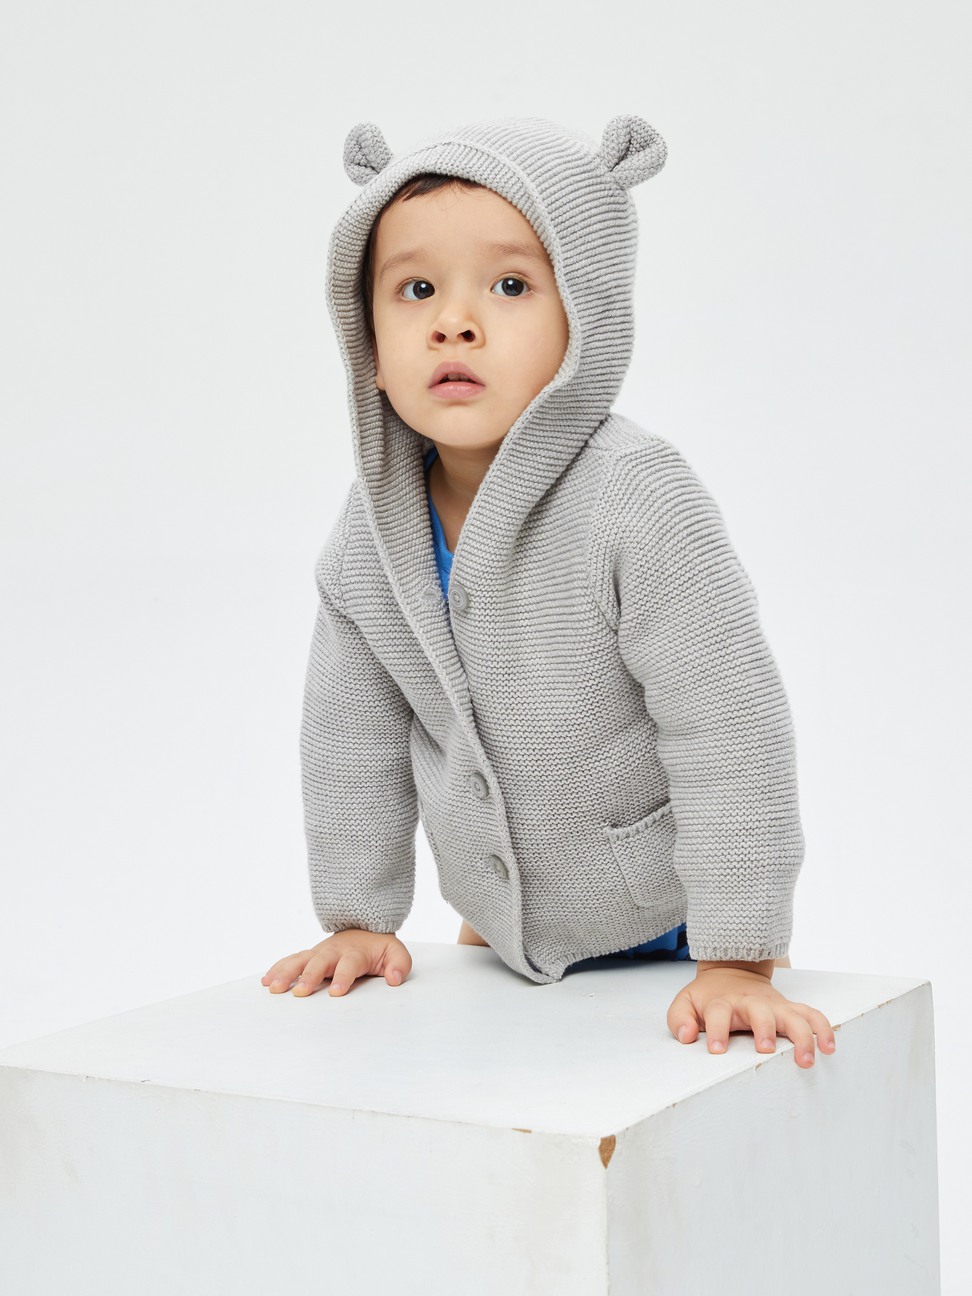 嬰兒裝|小熊造型平織連帽針織外套-淺灰